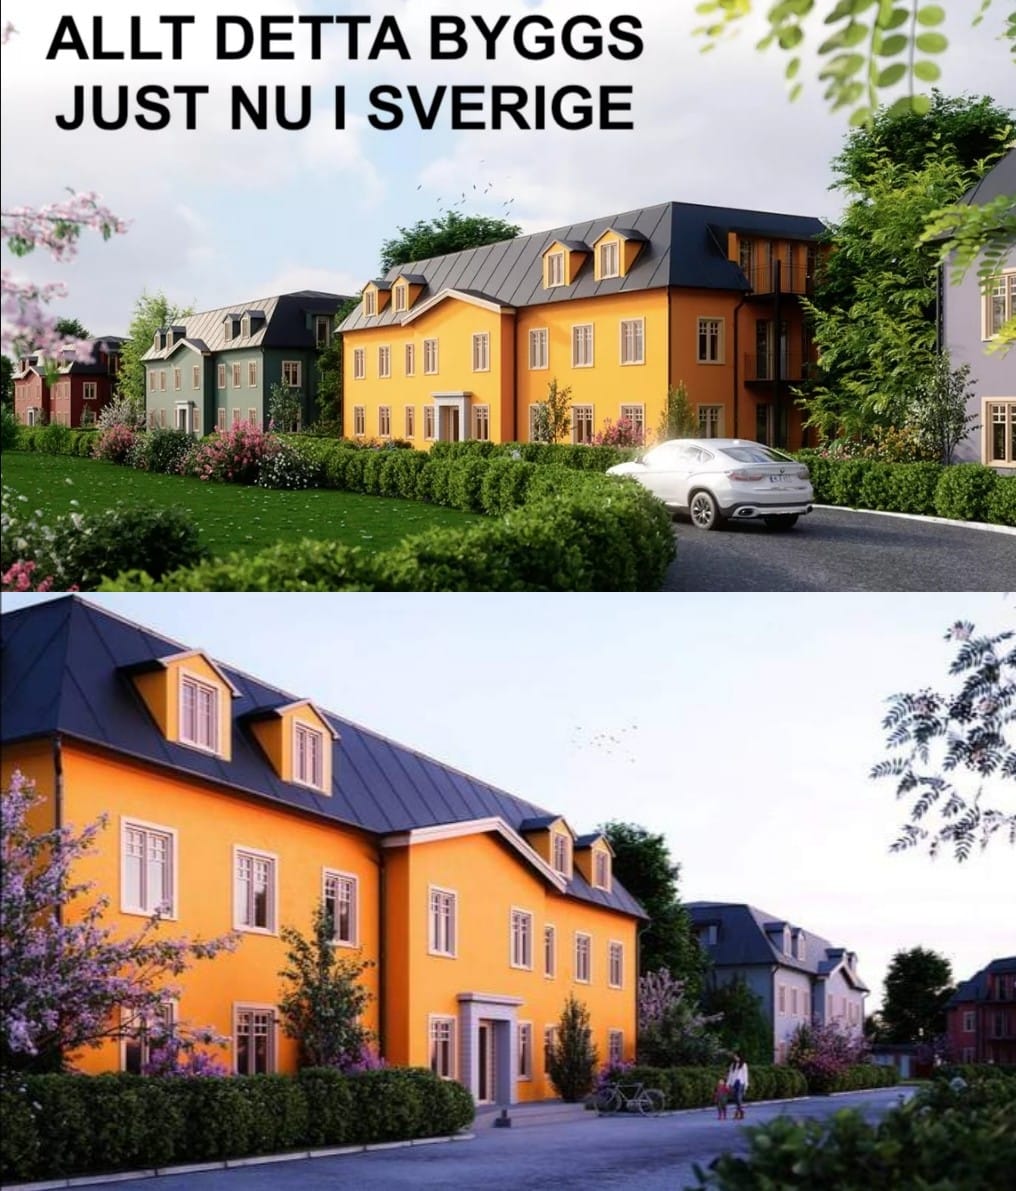 I vackra Steninge Slottsby utanför Märsta byggs just nu 48 vackra lägenheter i vacker lådfri stil. Inflyttning 2022. 